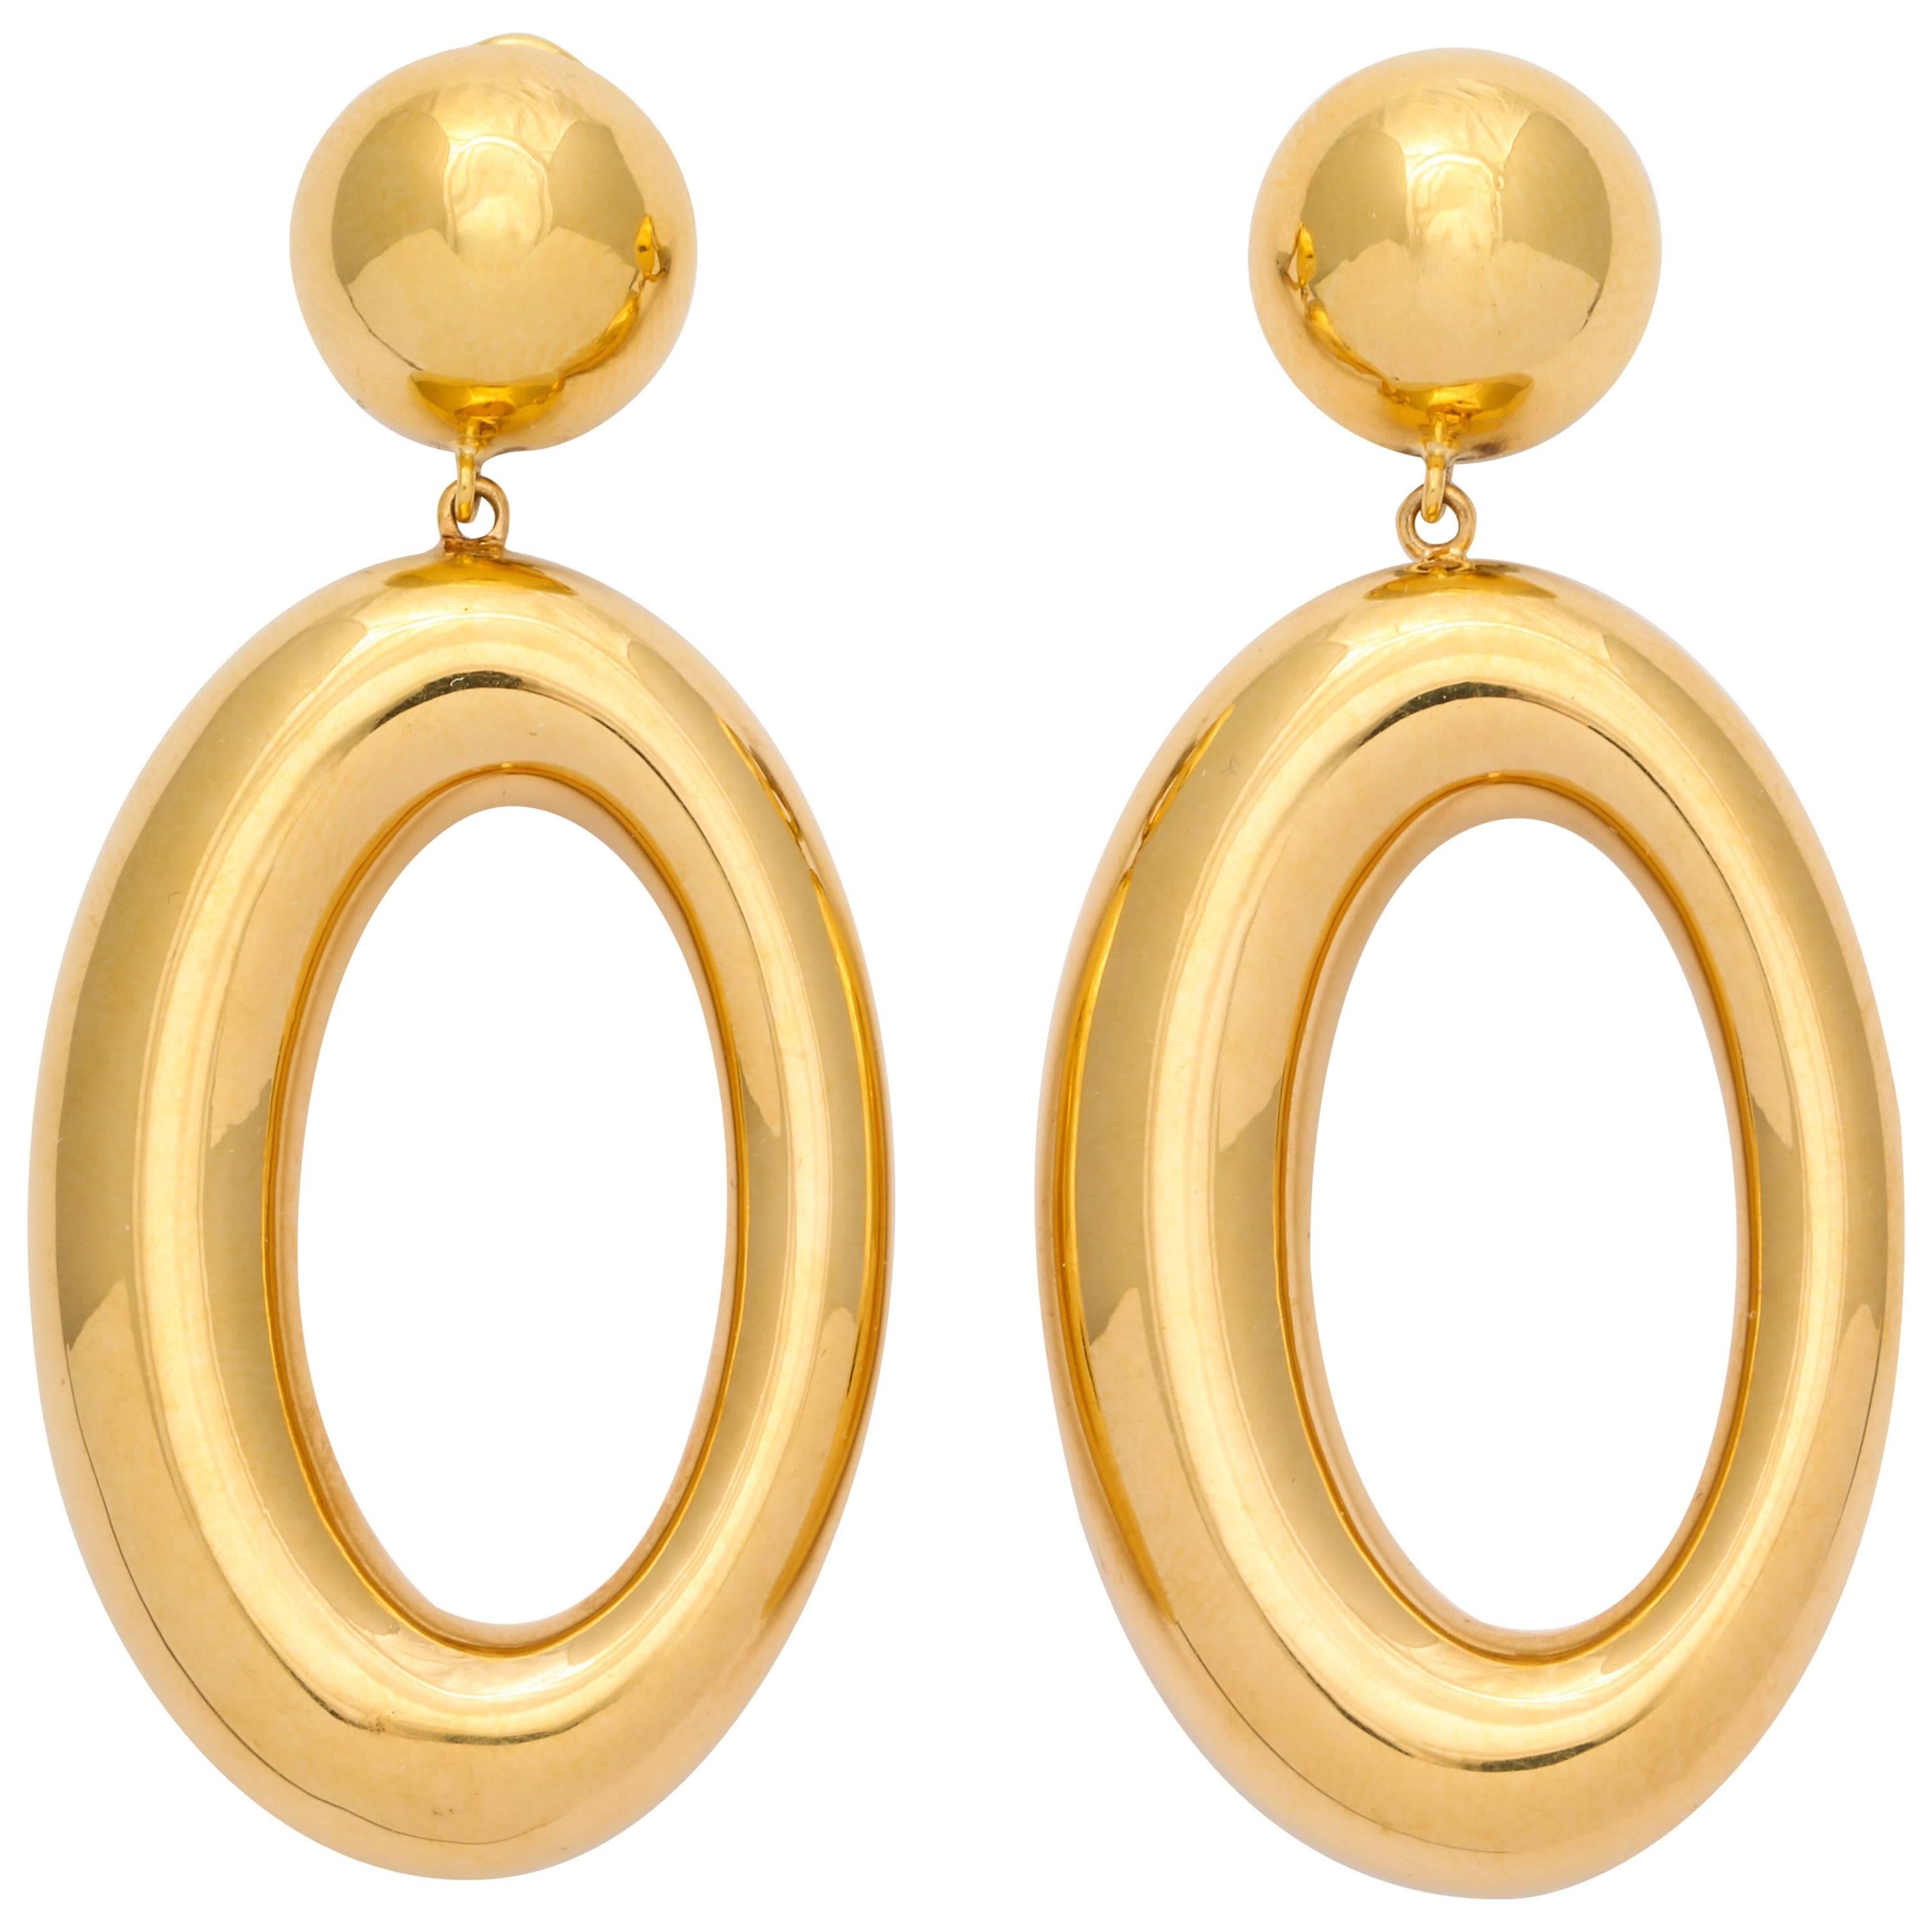 Italian Gold Earrings with Asymmetric Hoops  